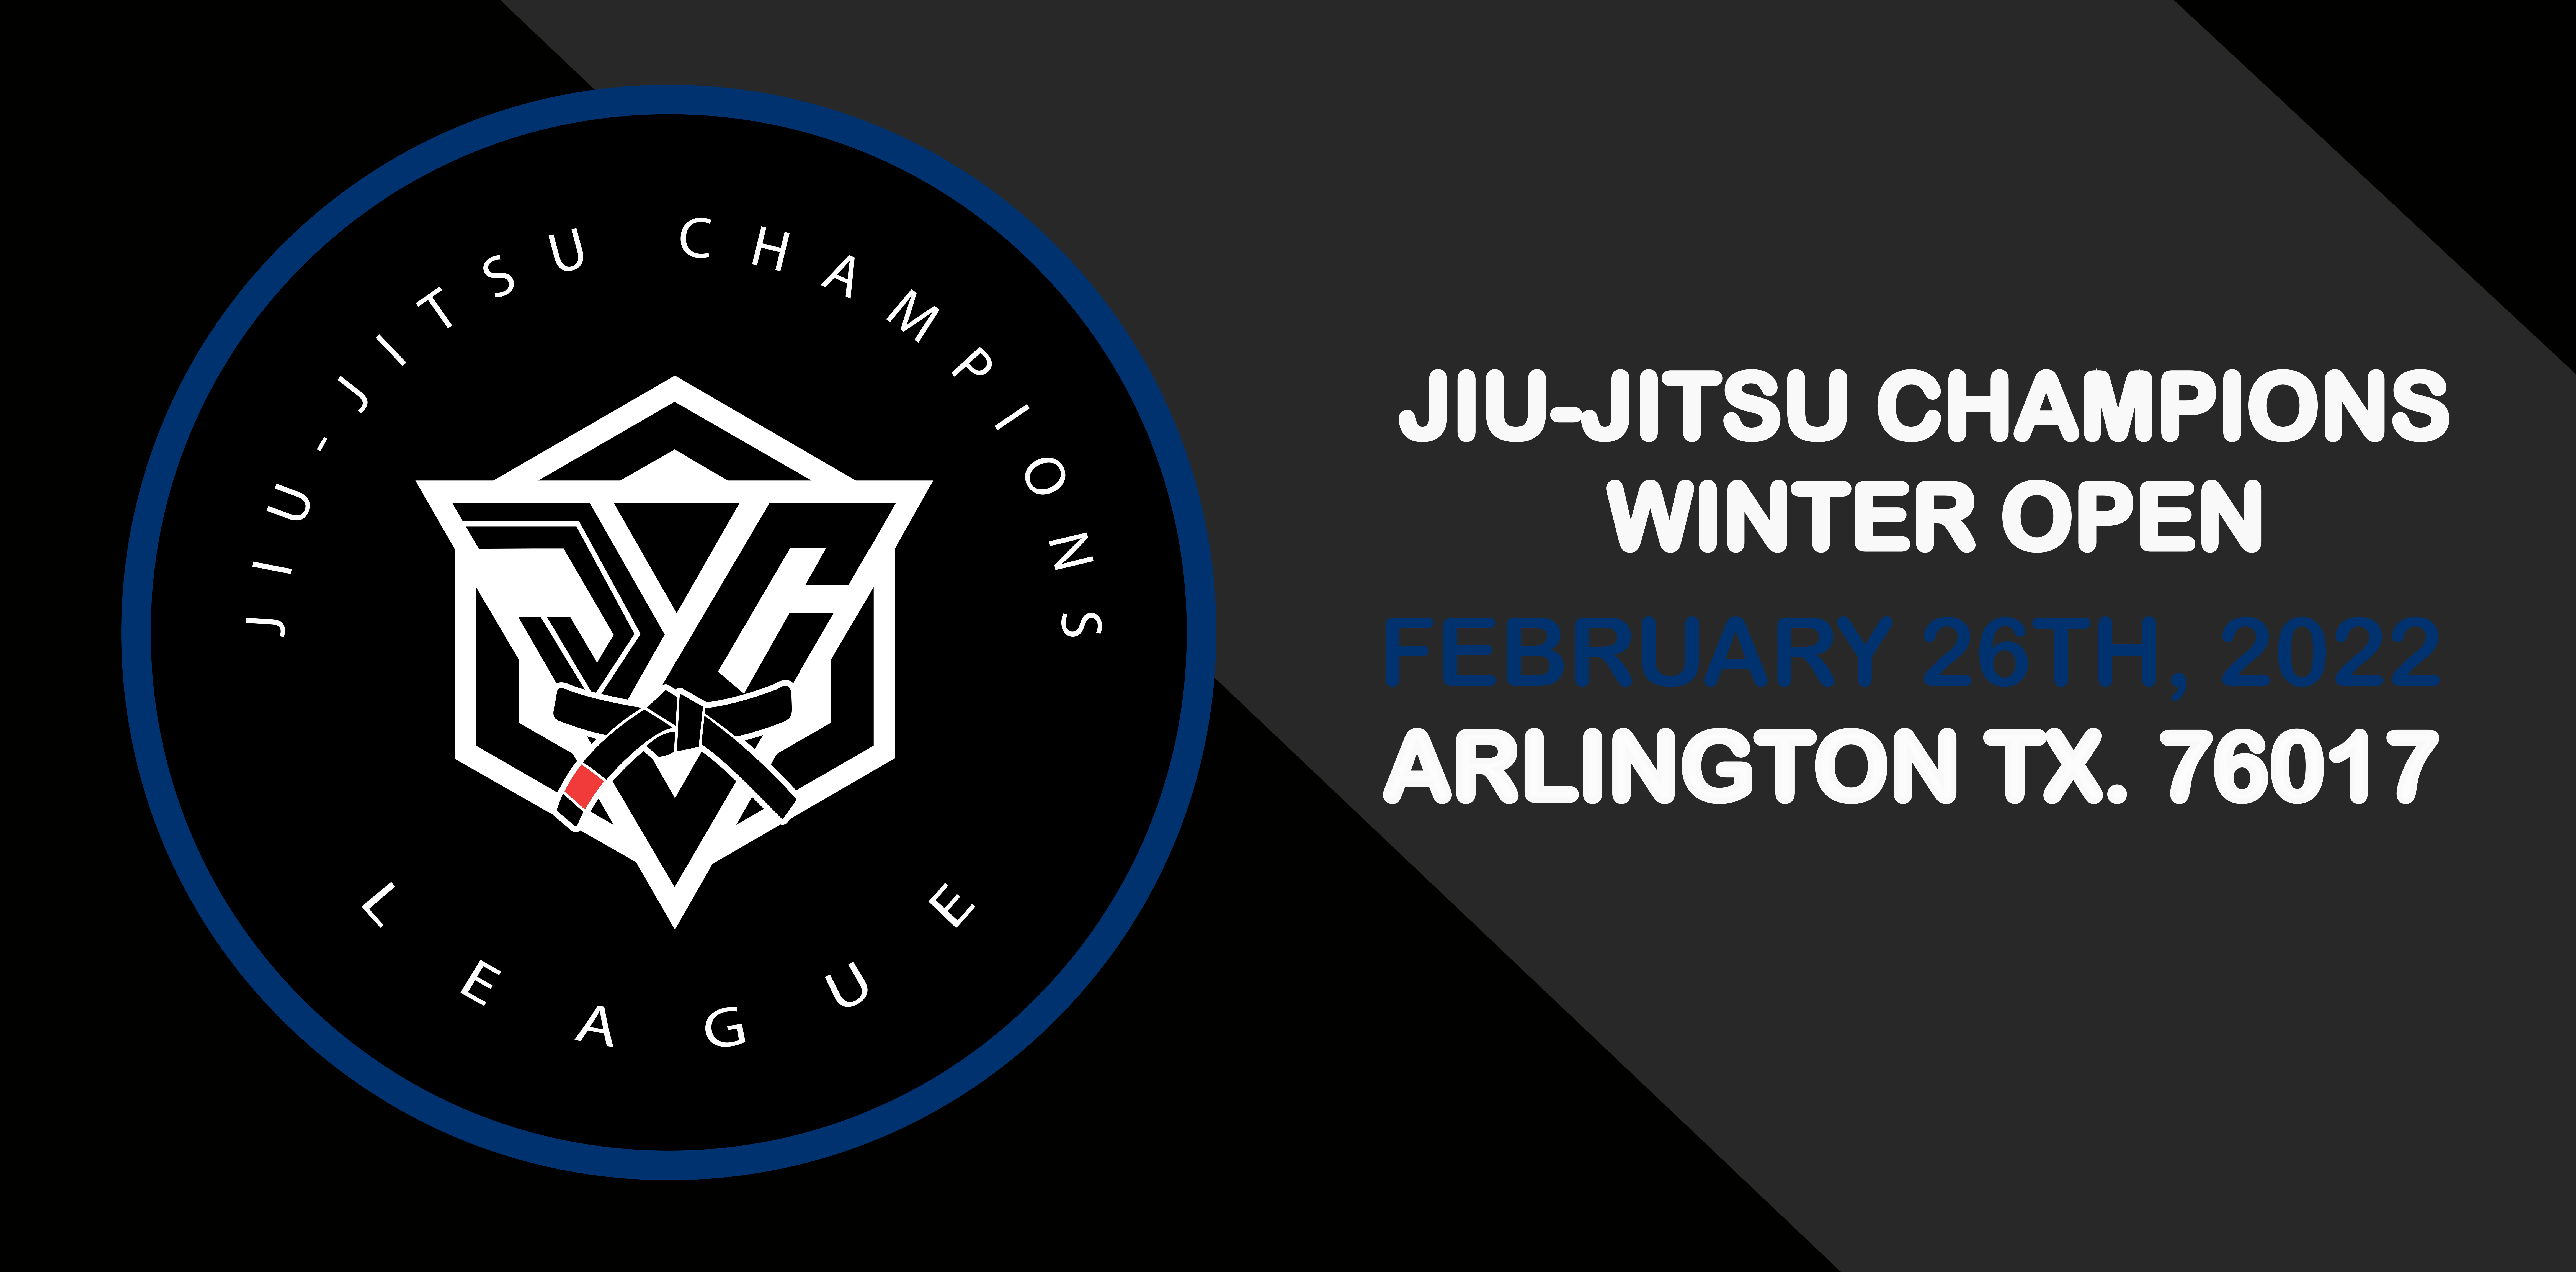 jiu-jitsu champions winter open no-gi